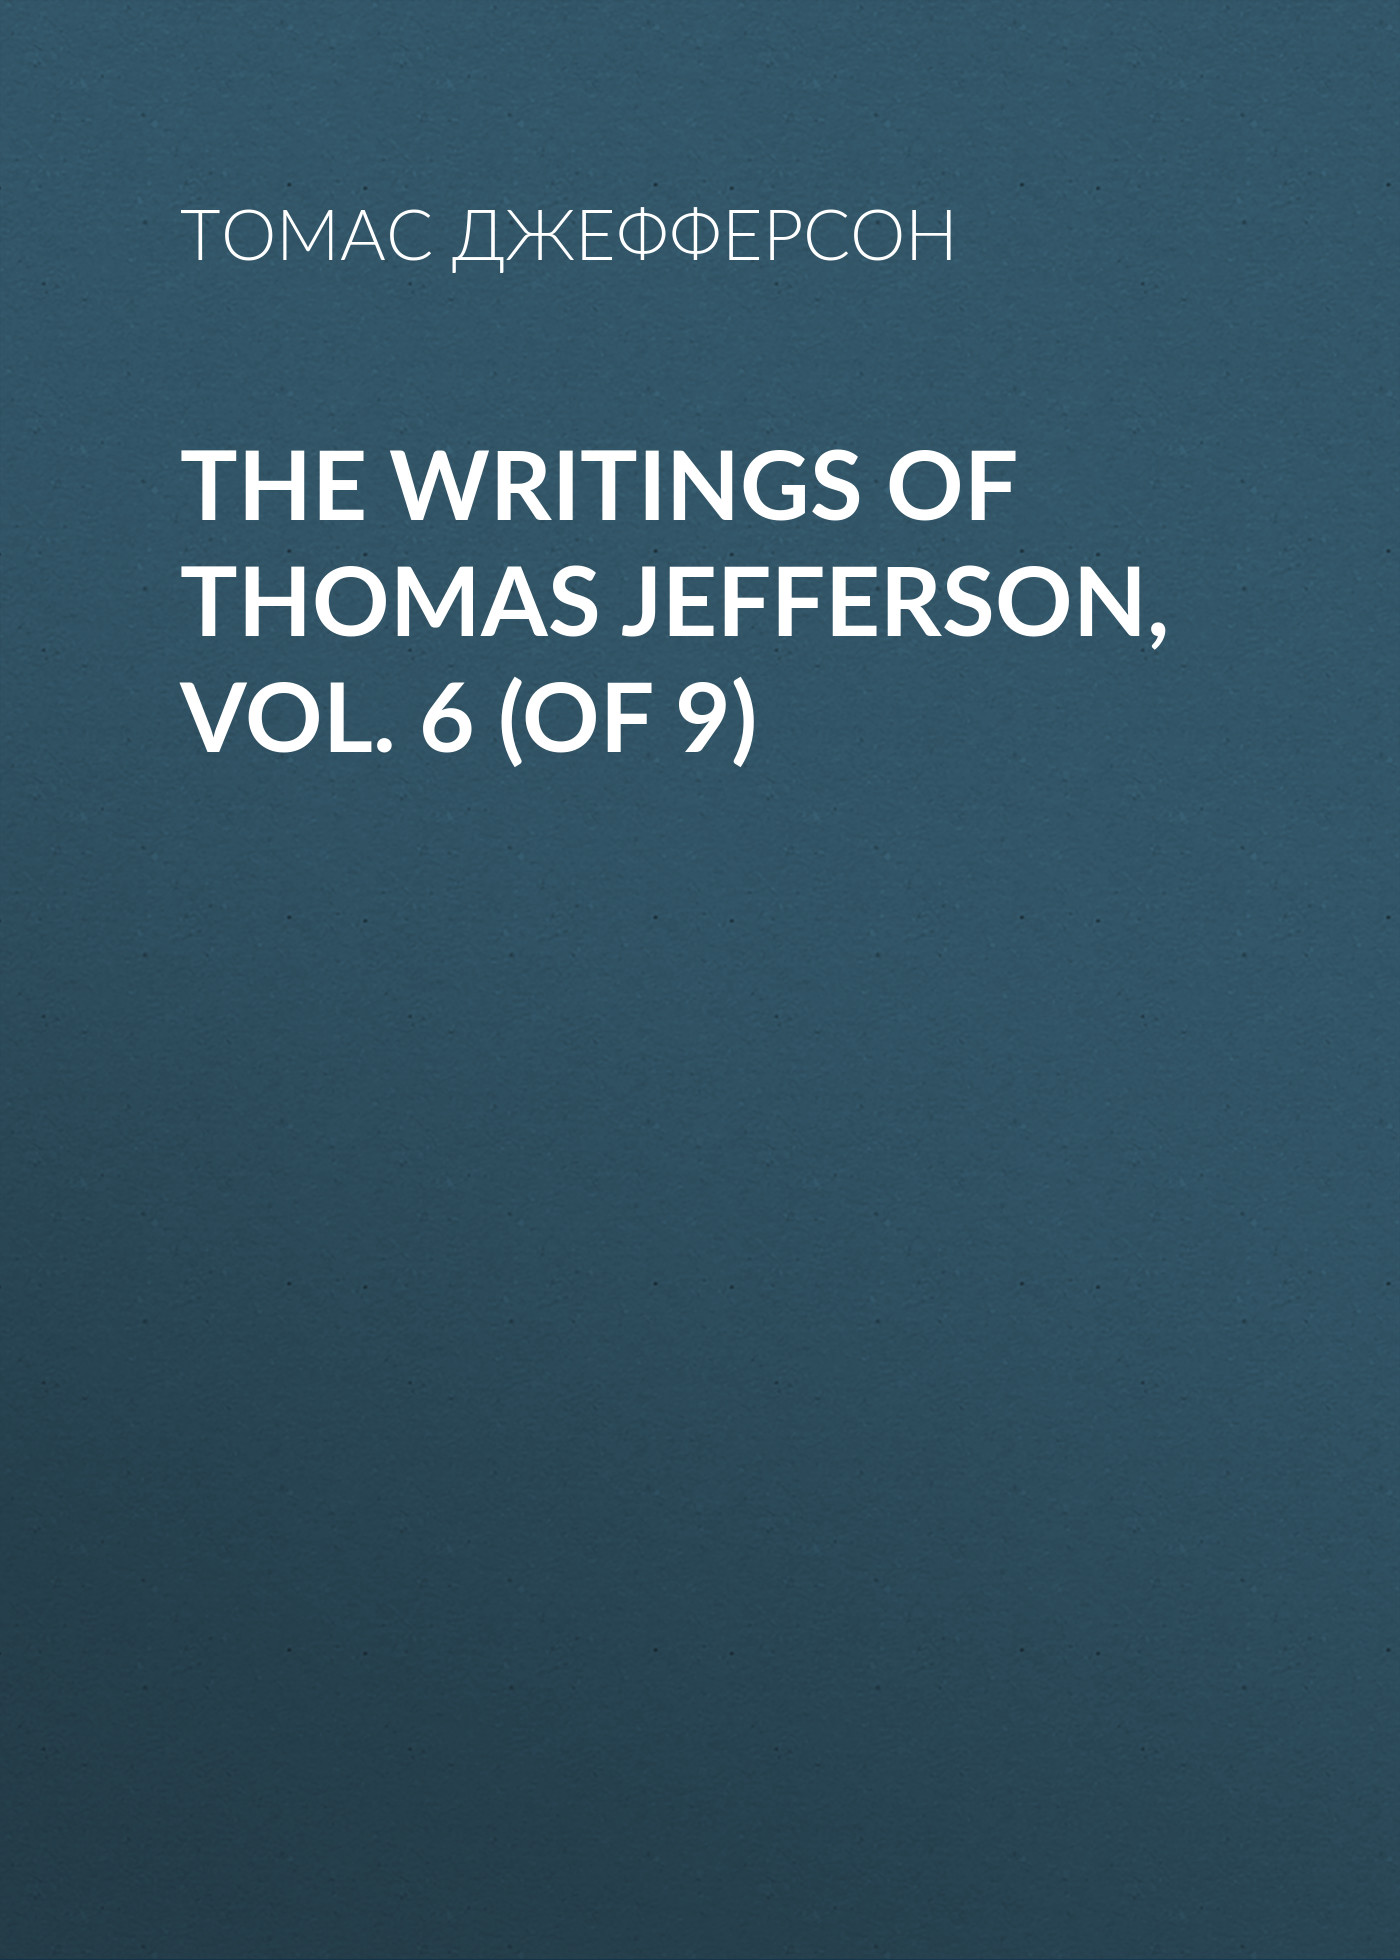 Книга The Writings of Thomas Jefferson, Vol. 6 (of 9) из серии , созданная Томас Джефферсон, может относится к жанру Биографии и Мемуары, Зарубежная старинная литература. Стоимость электронной книги The Writings of Thomas Jefferson, Vol. 6 (of 9) с идентификатором 34838630 составляет 0 руб.